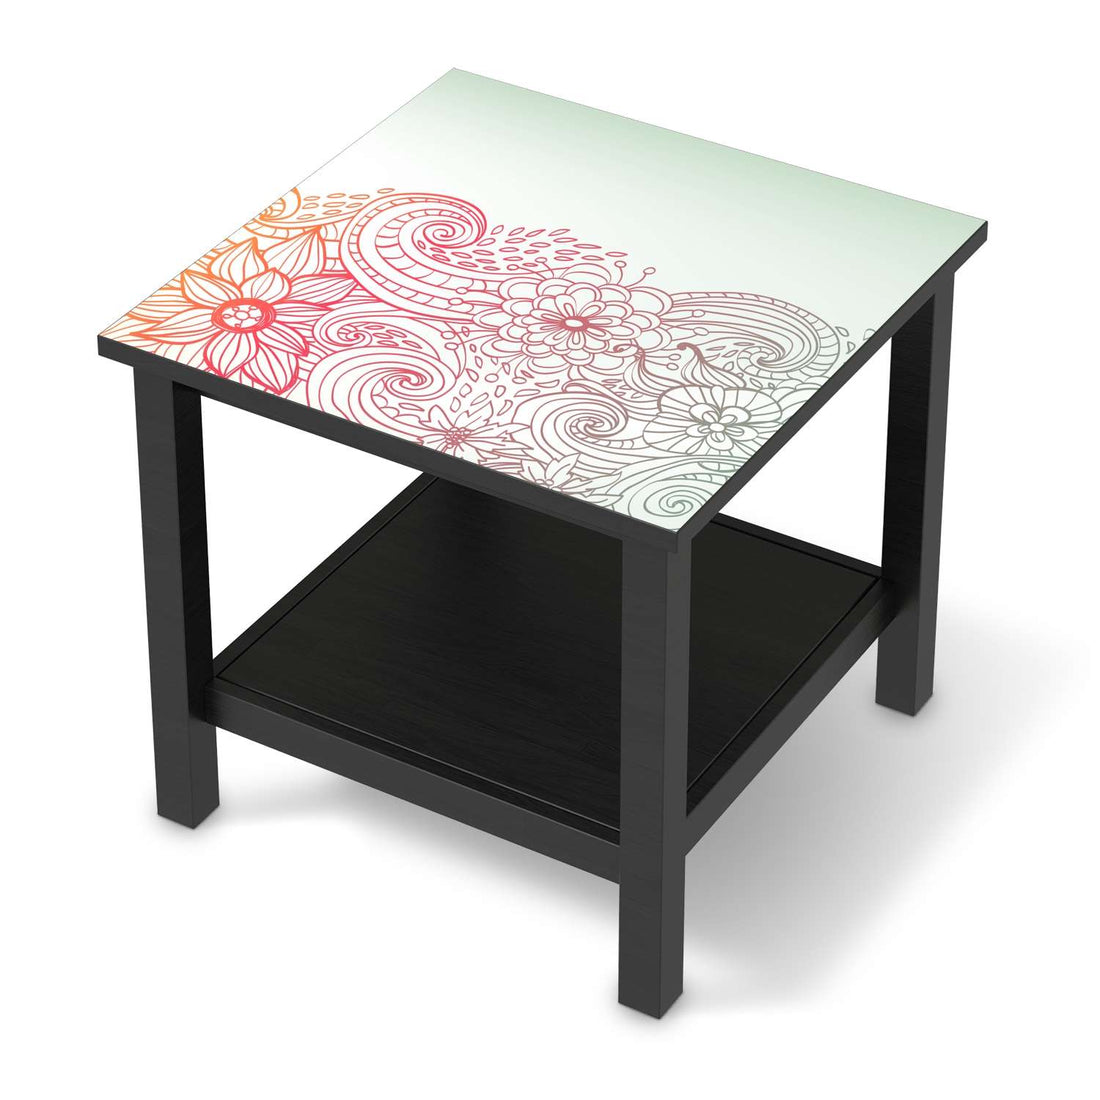 Möbel Klebefolie Floral Doodle - IKEA Hemnes Beistelltisch 55x55 cm - schwarz